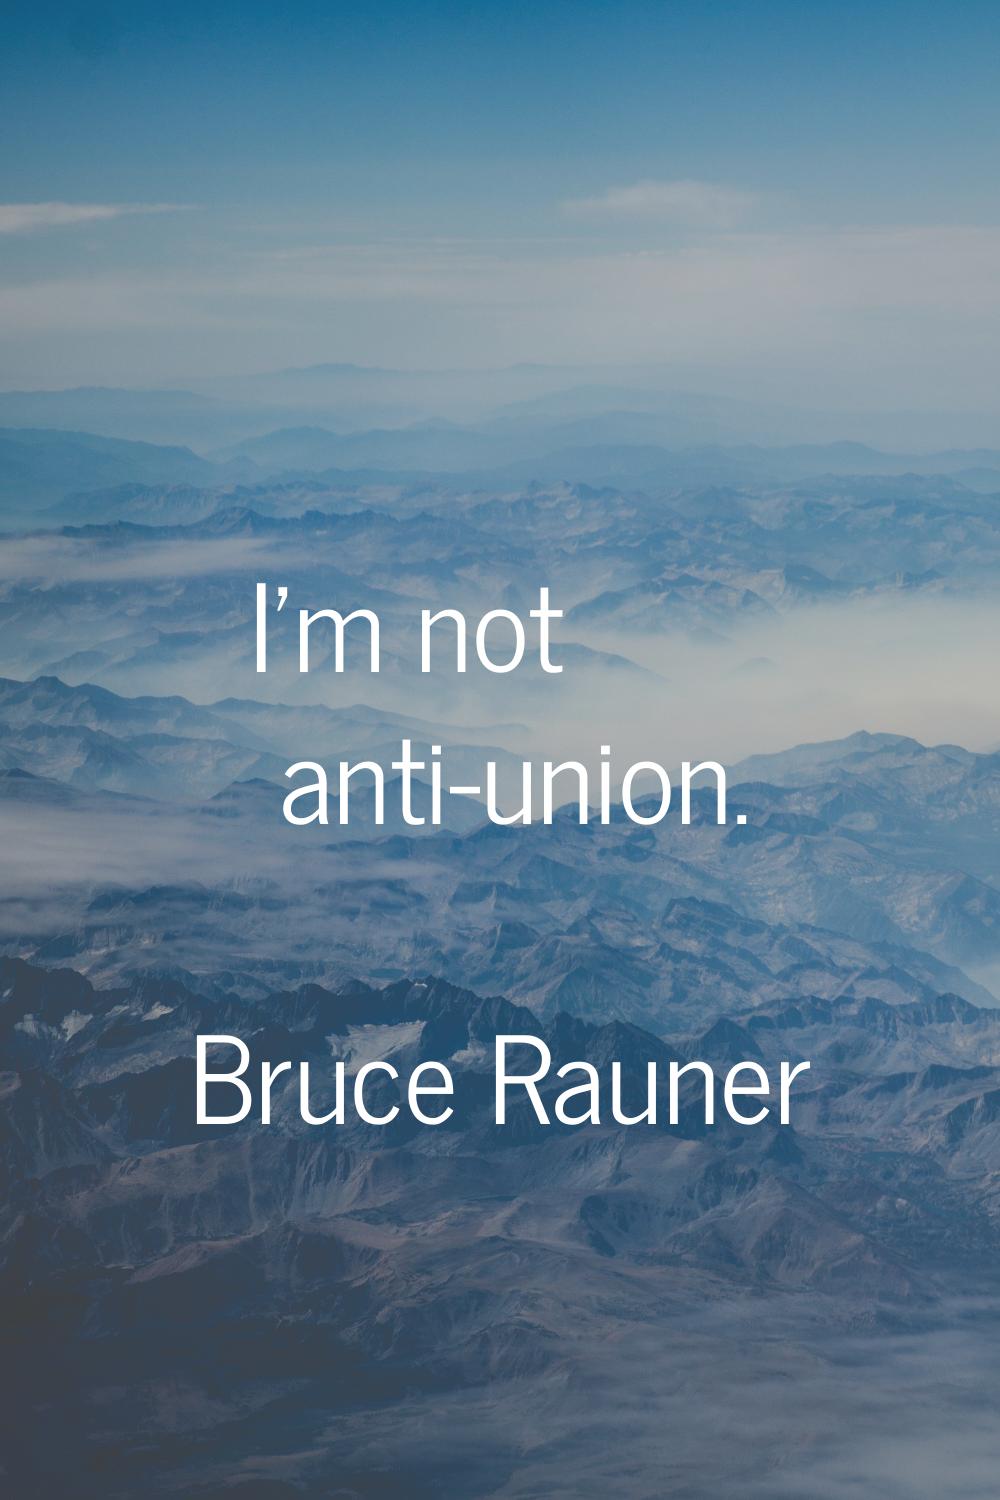 I'm not anti-union.